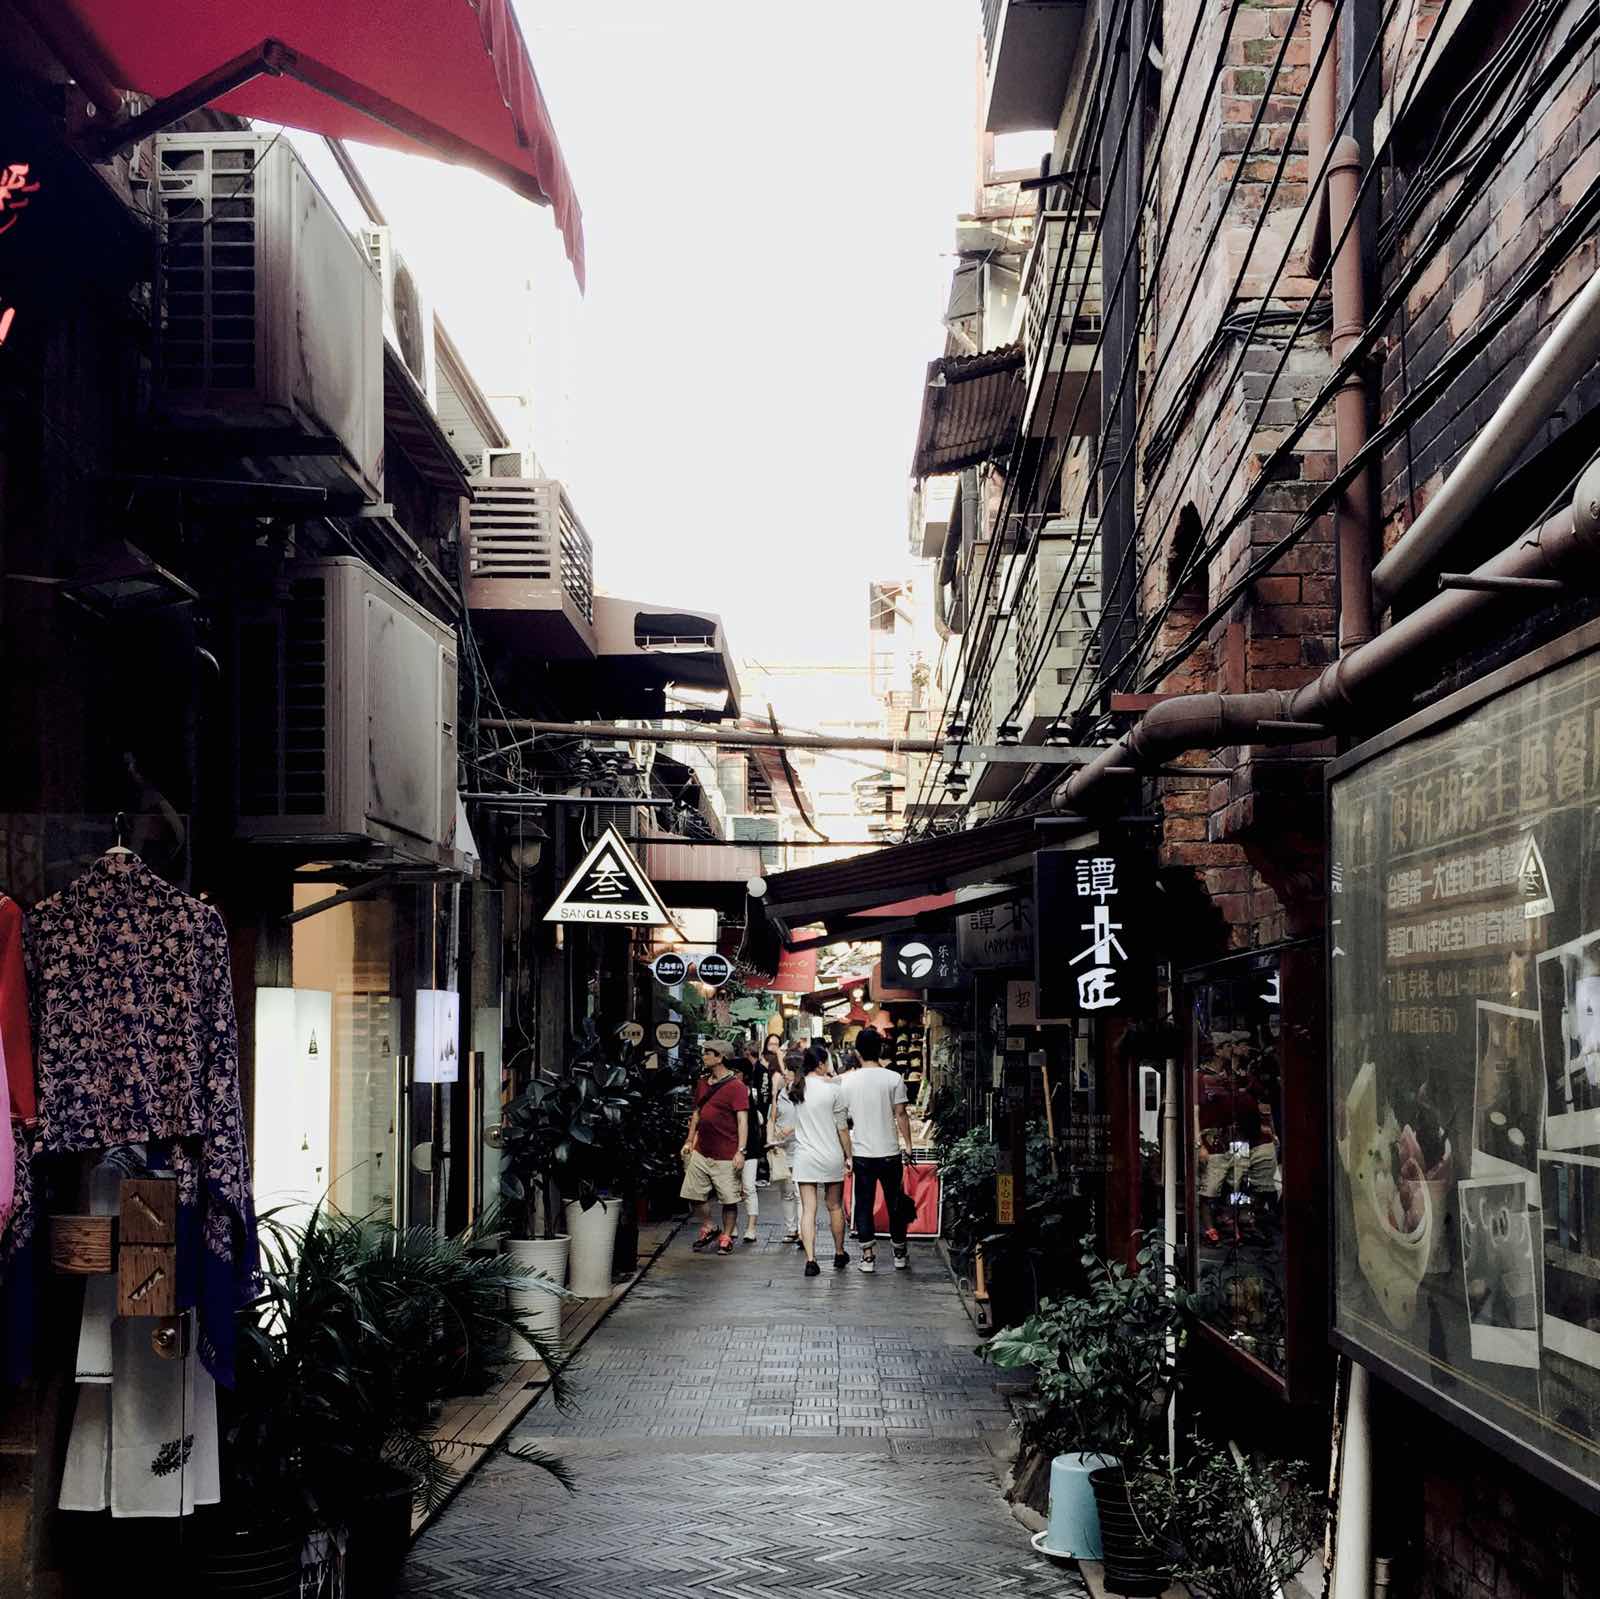 田子坊就好像厦门的鼓浪屿 各种文青范儿店 我喜欢的上海就是各种小弄堂